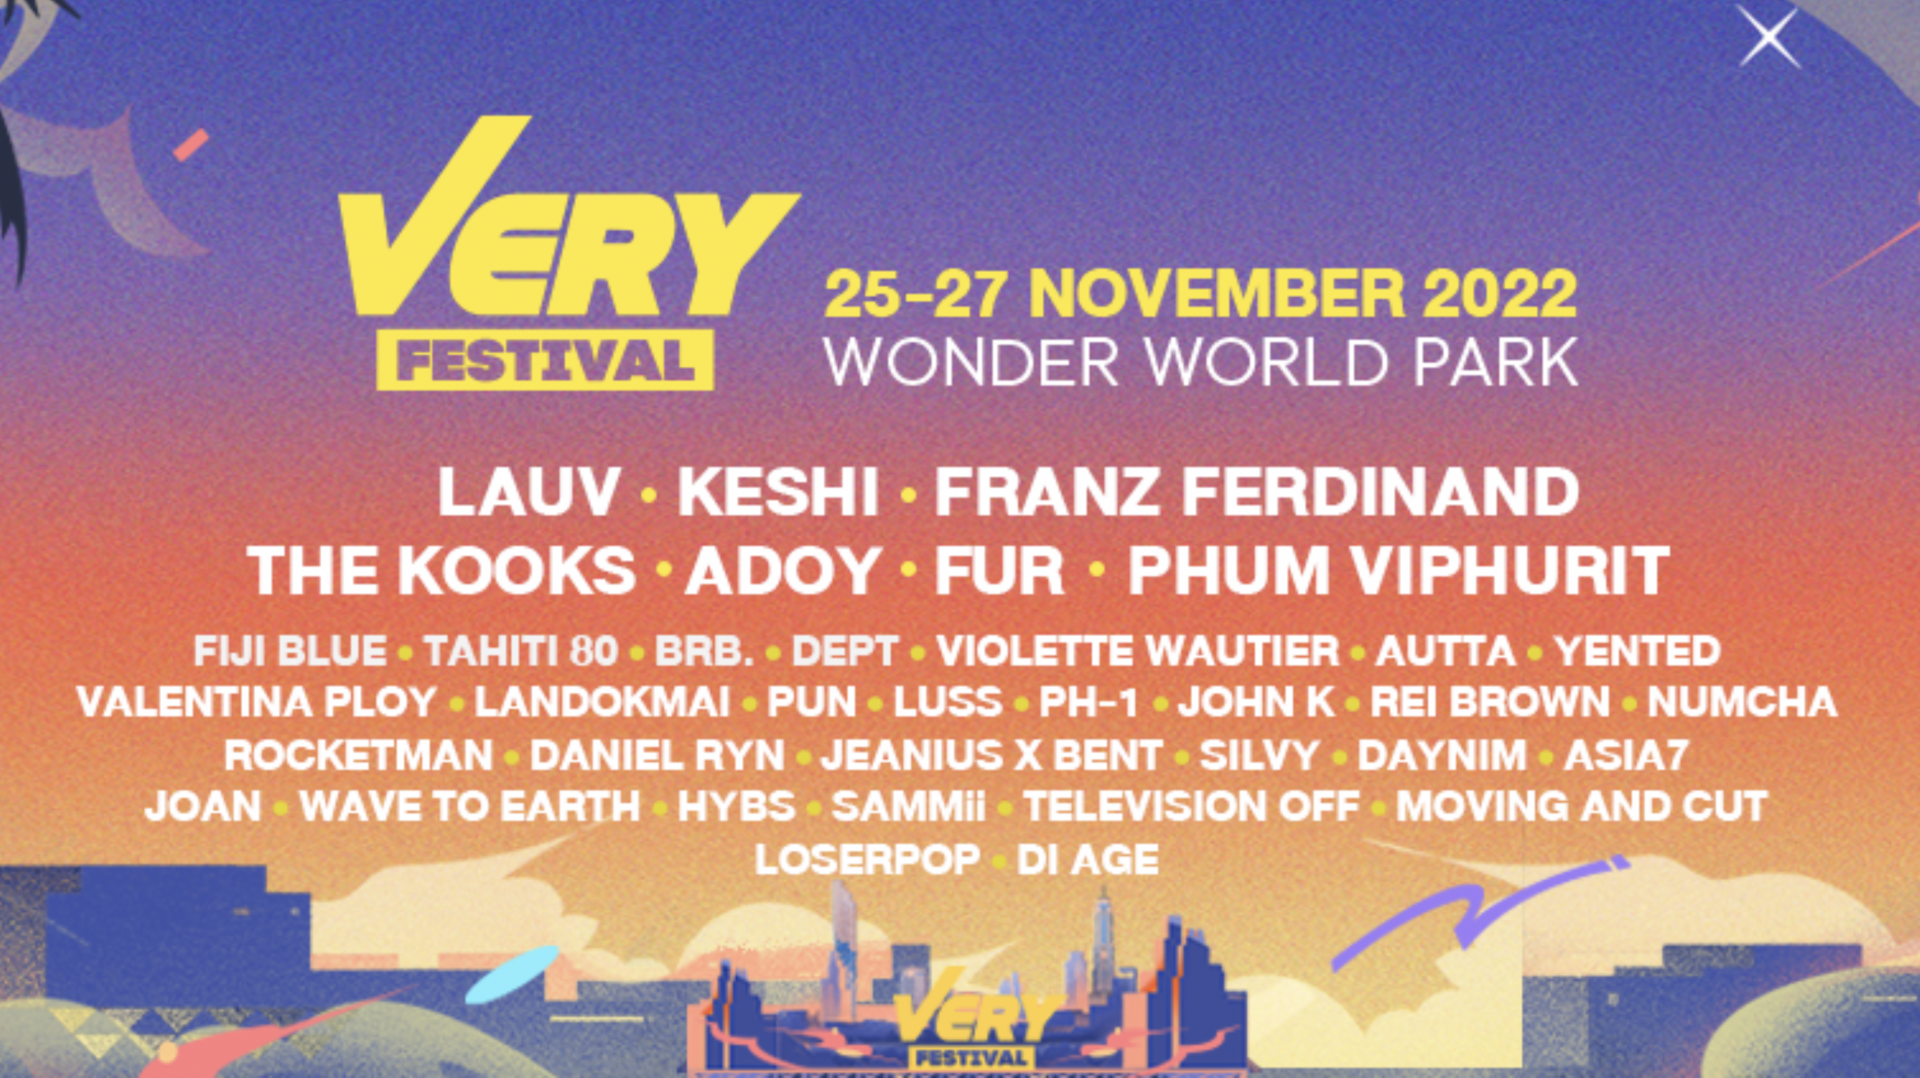 “Very Festival 2022” 25-27 พ.ย.นี้ เทศกาลดนตรีนานาชาติสุดยิ่งใหญ่แห่งปีที่คอดนตรีไม่ควรพลาด !